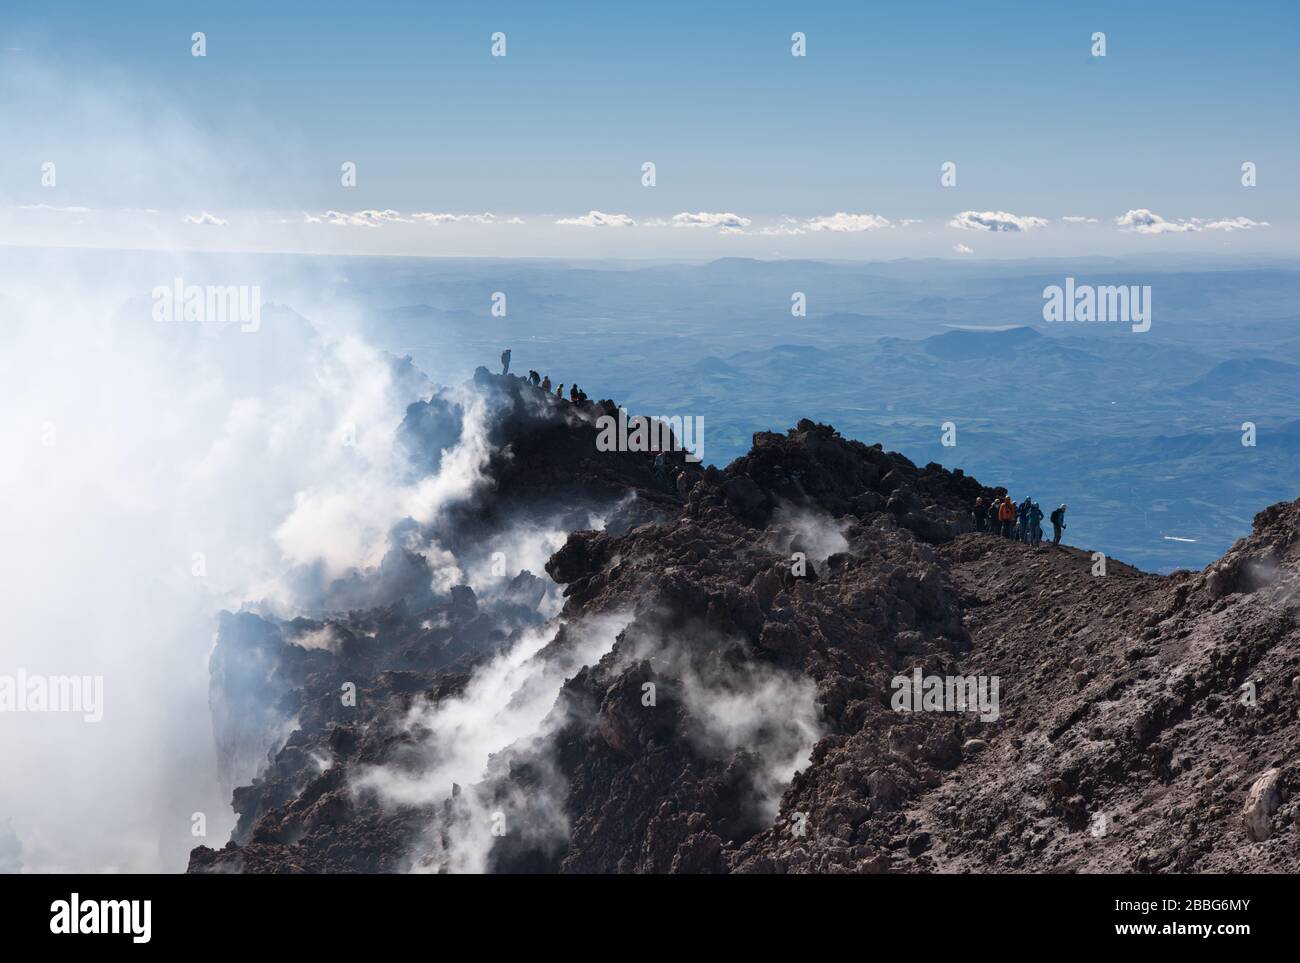 Wasserdampf und andere vulkanische Gase überlaufen die Gipfelkrater des Ätna und schütten sich über die oberen Hänge des Vulkans aus. Die Menschen verschwinden im Dampf. Stockfoto